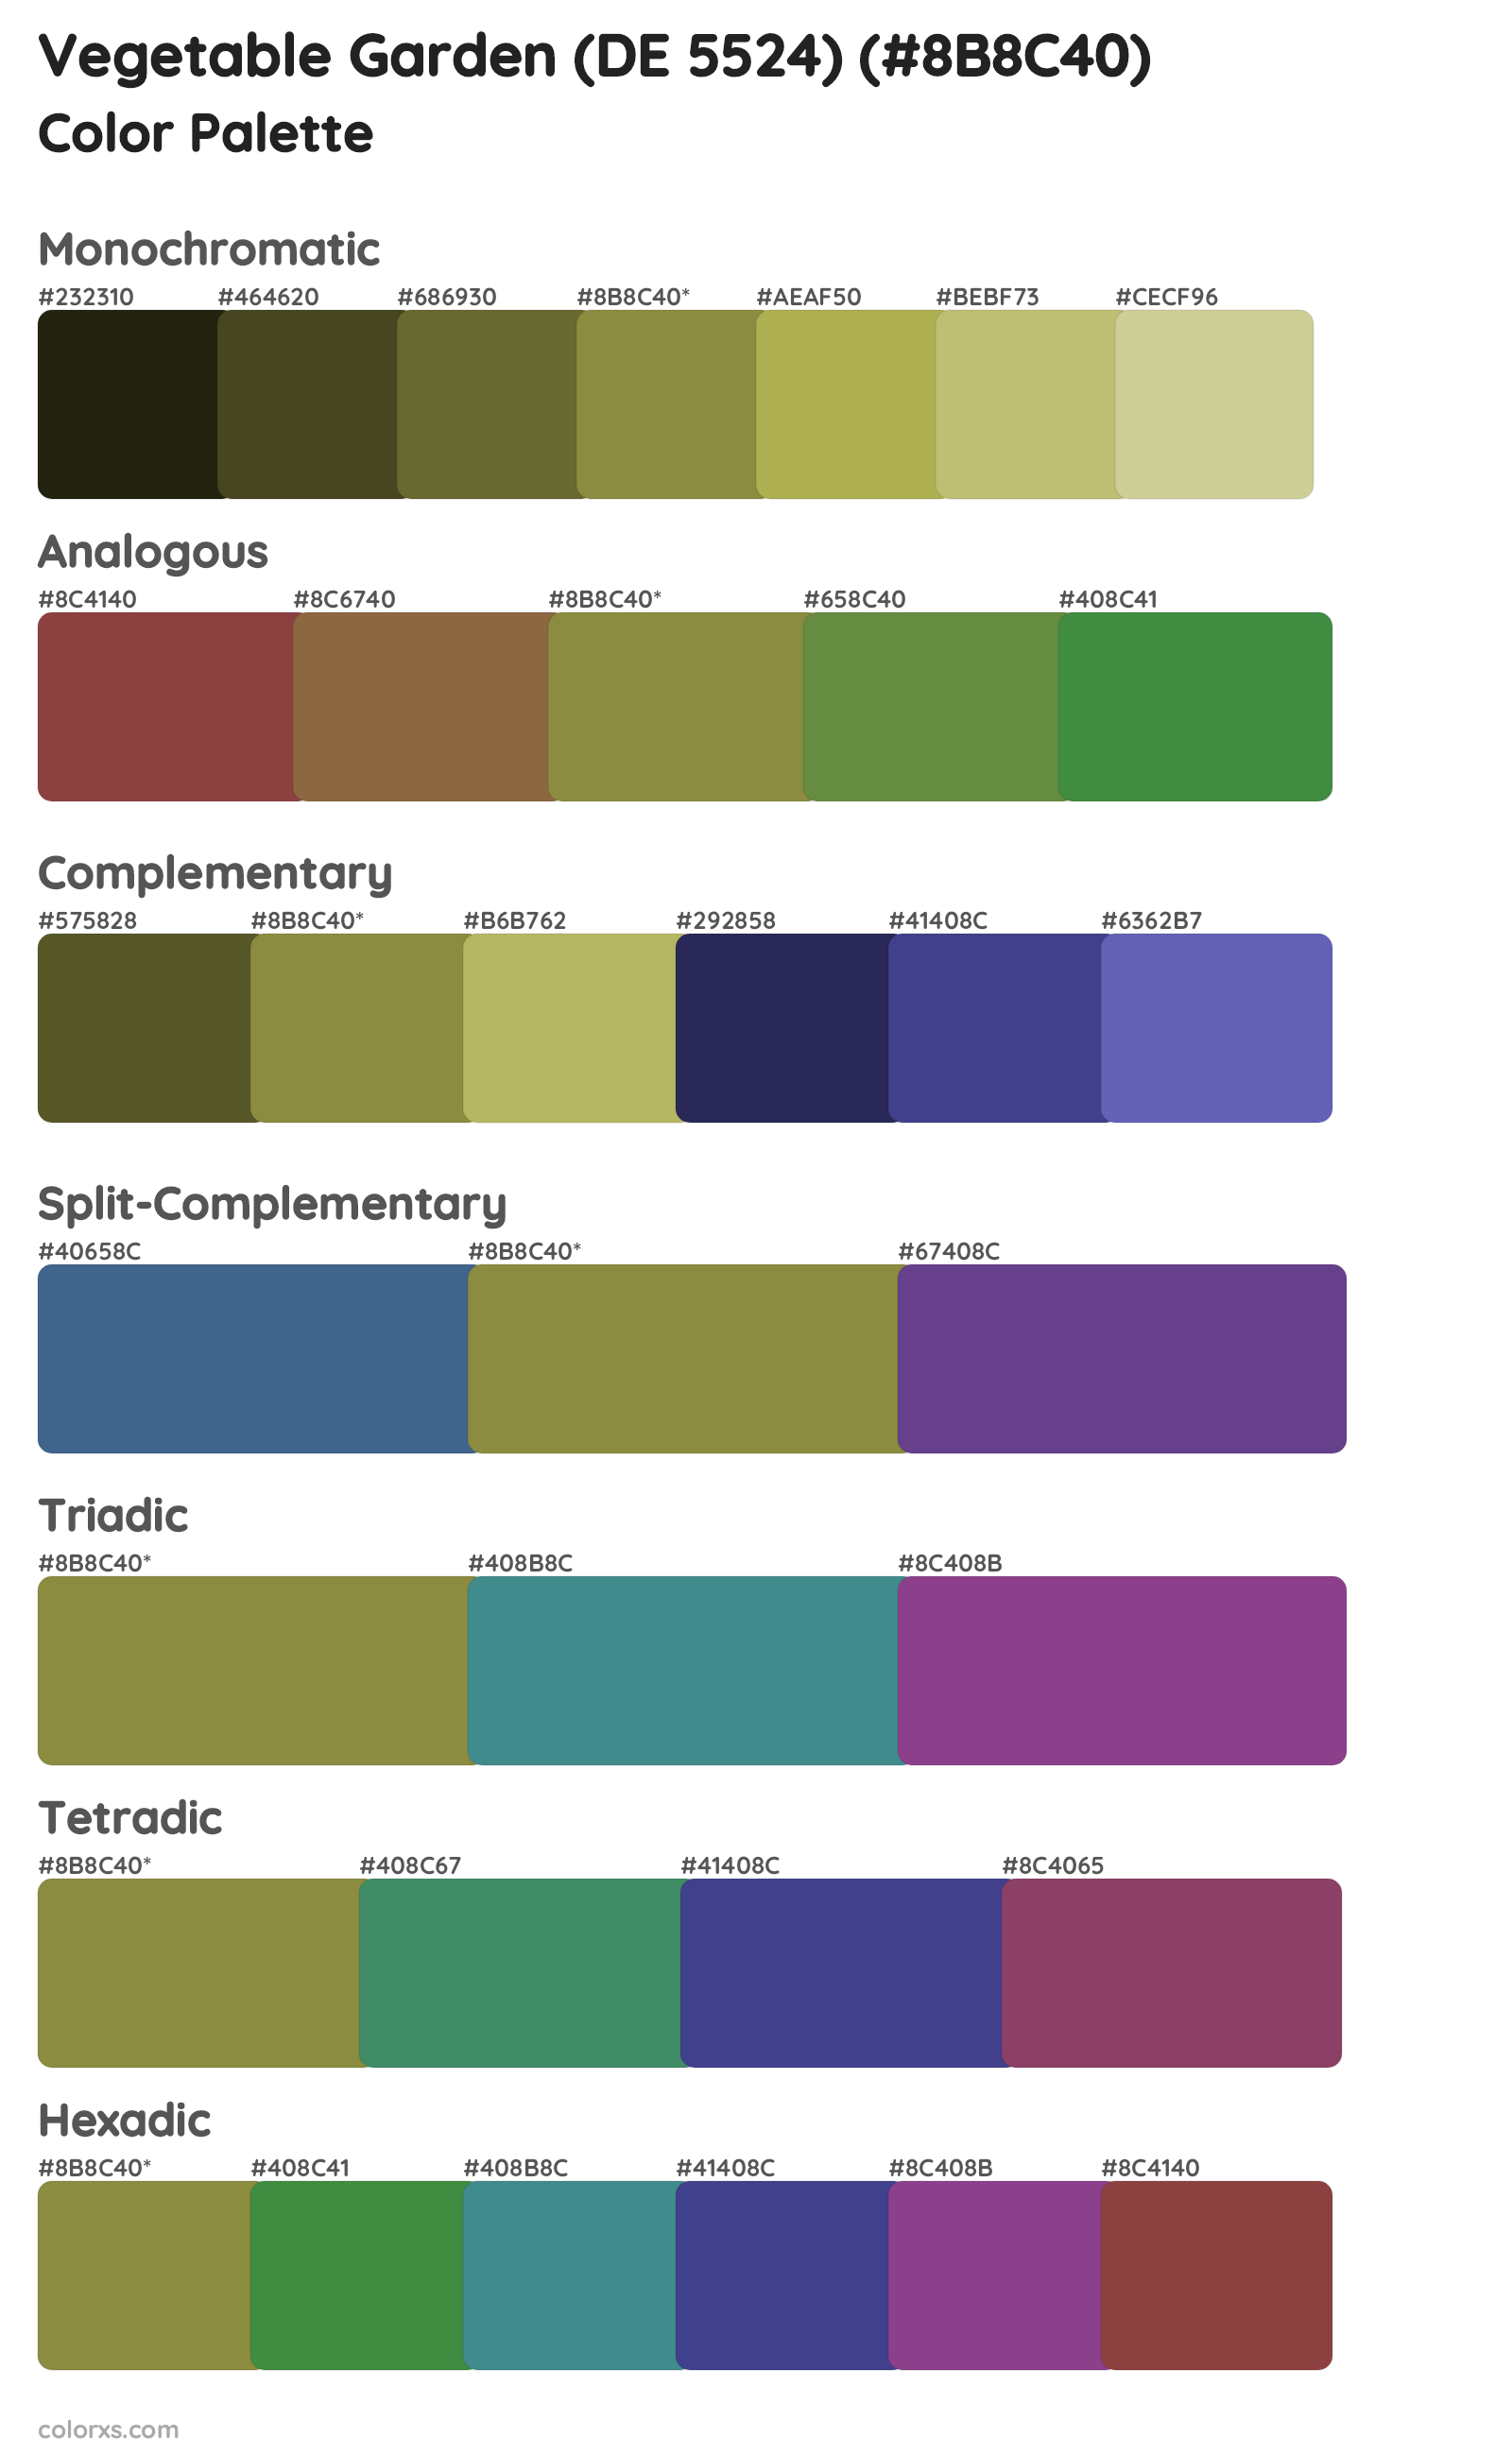 Vegetable Garden (DE 5524) Color Scheme Palettes